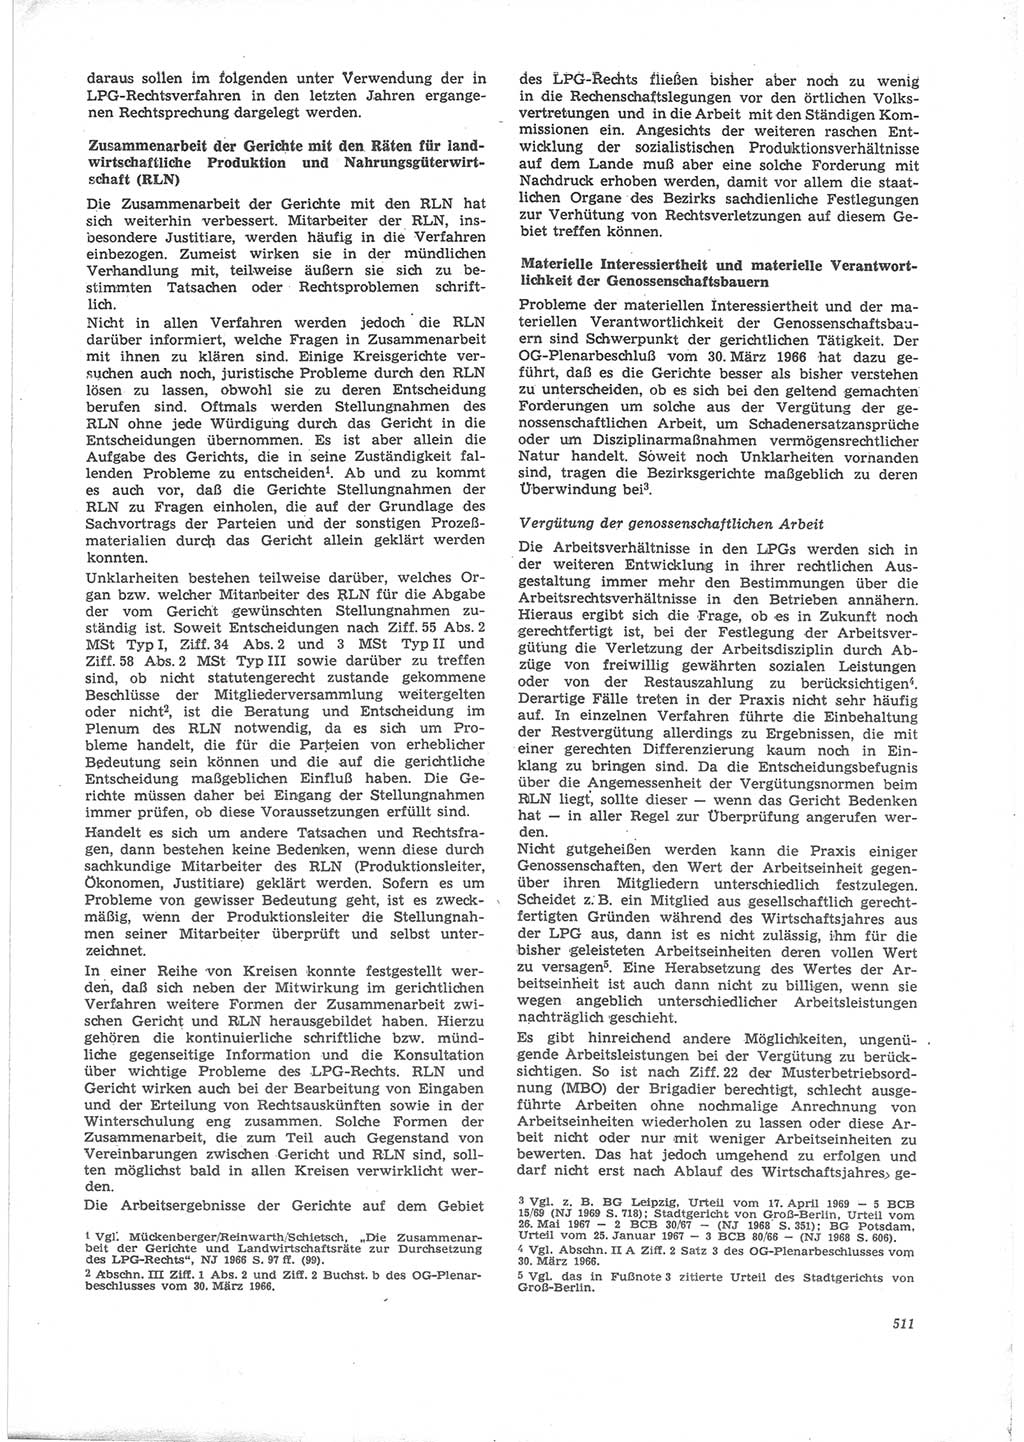 Neue Justiz (NJ), Zeitschrift für Recht und Rechtswissenschaft [Deutsche Demokratische Republik (DDR)], 24. Jahrgang 1970, Seite 511 (NJ DDR 1970, S. 511)